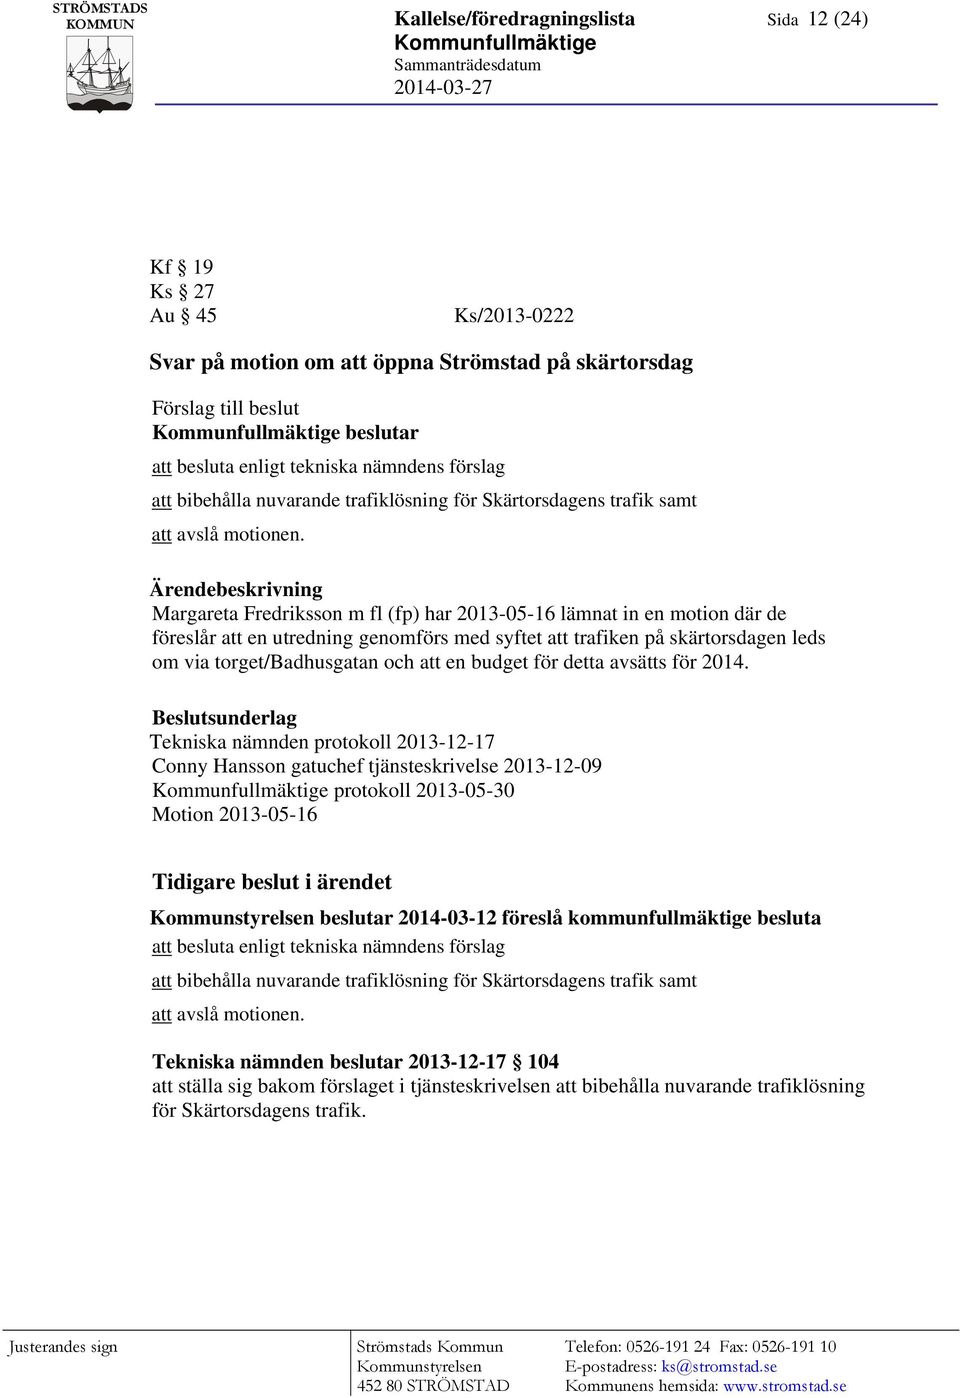 Ärendebeskrivning Margareta Fredriksson m fl (fp) har 2013-05-16 lämnat in en motion där de föreslår att en utredning genomförs med syftet att trafiken på skärtorsdagen leds om via torget/badhusgatan